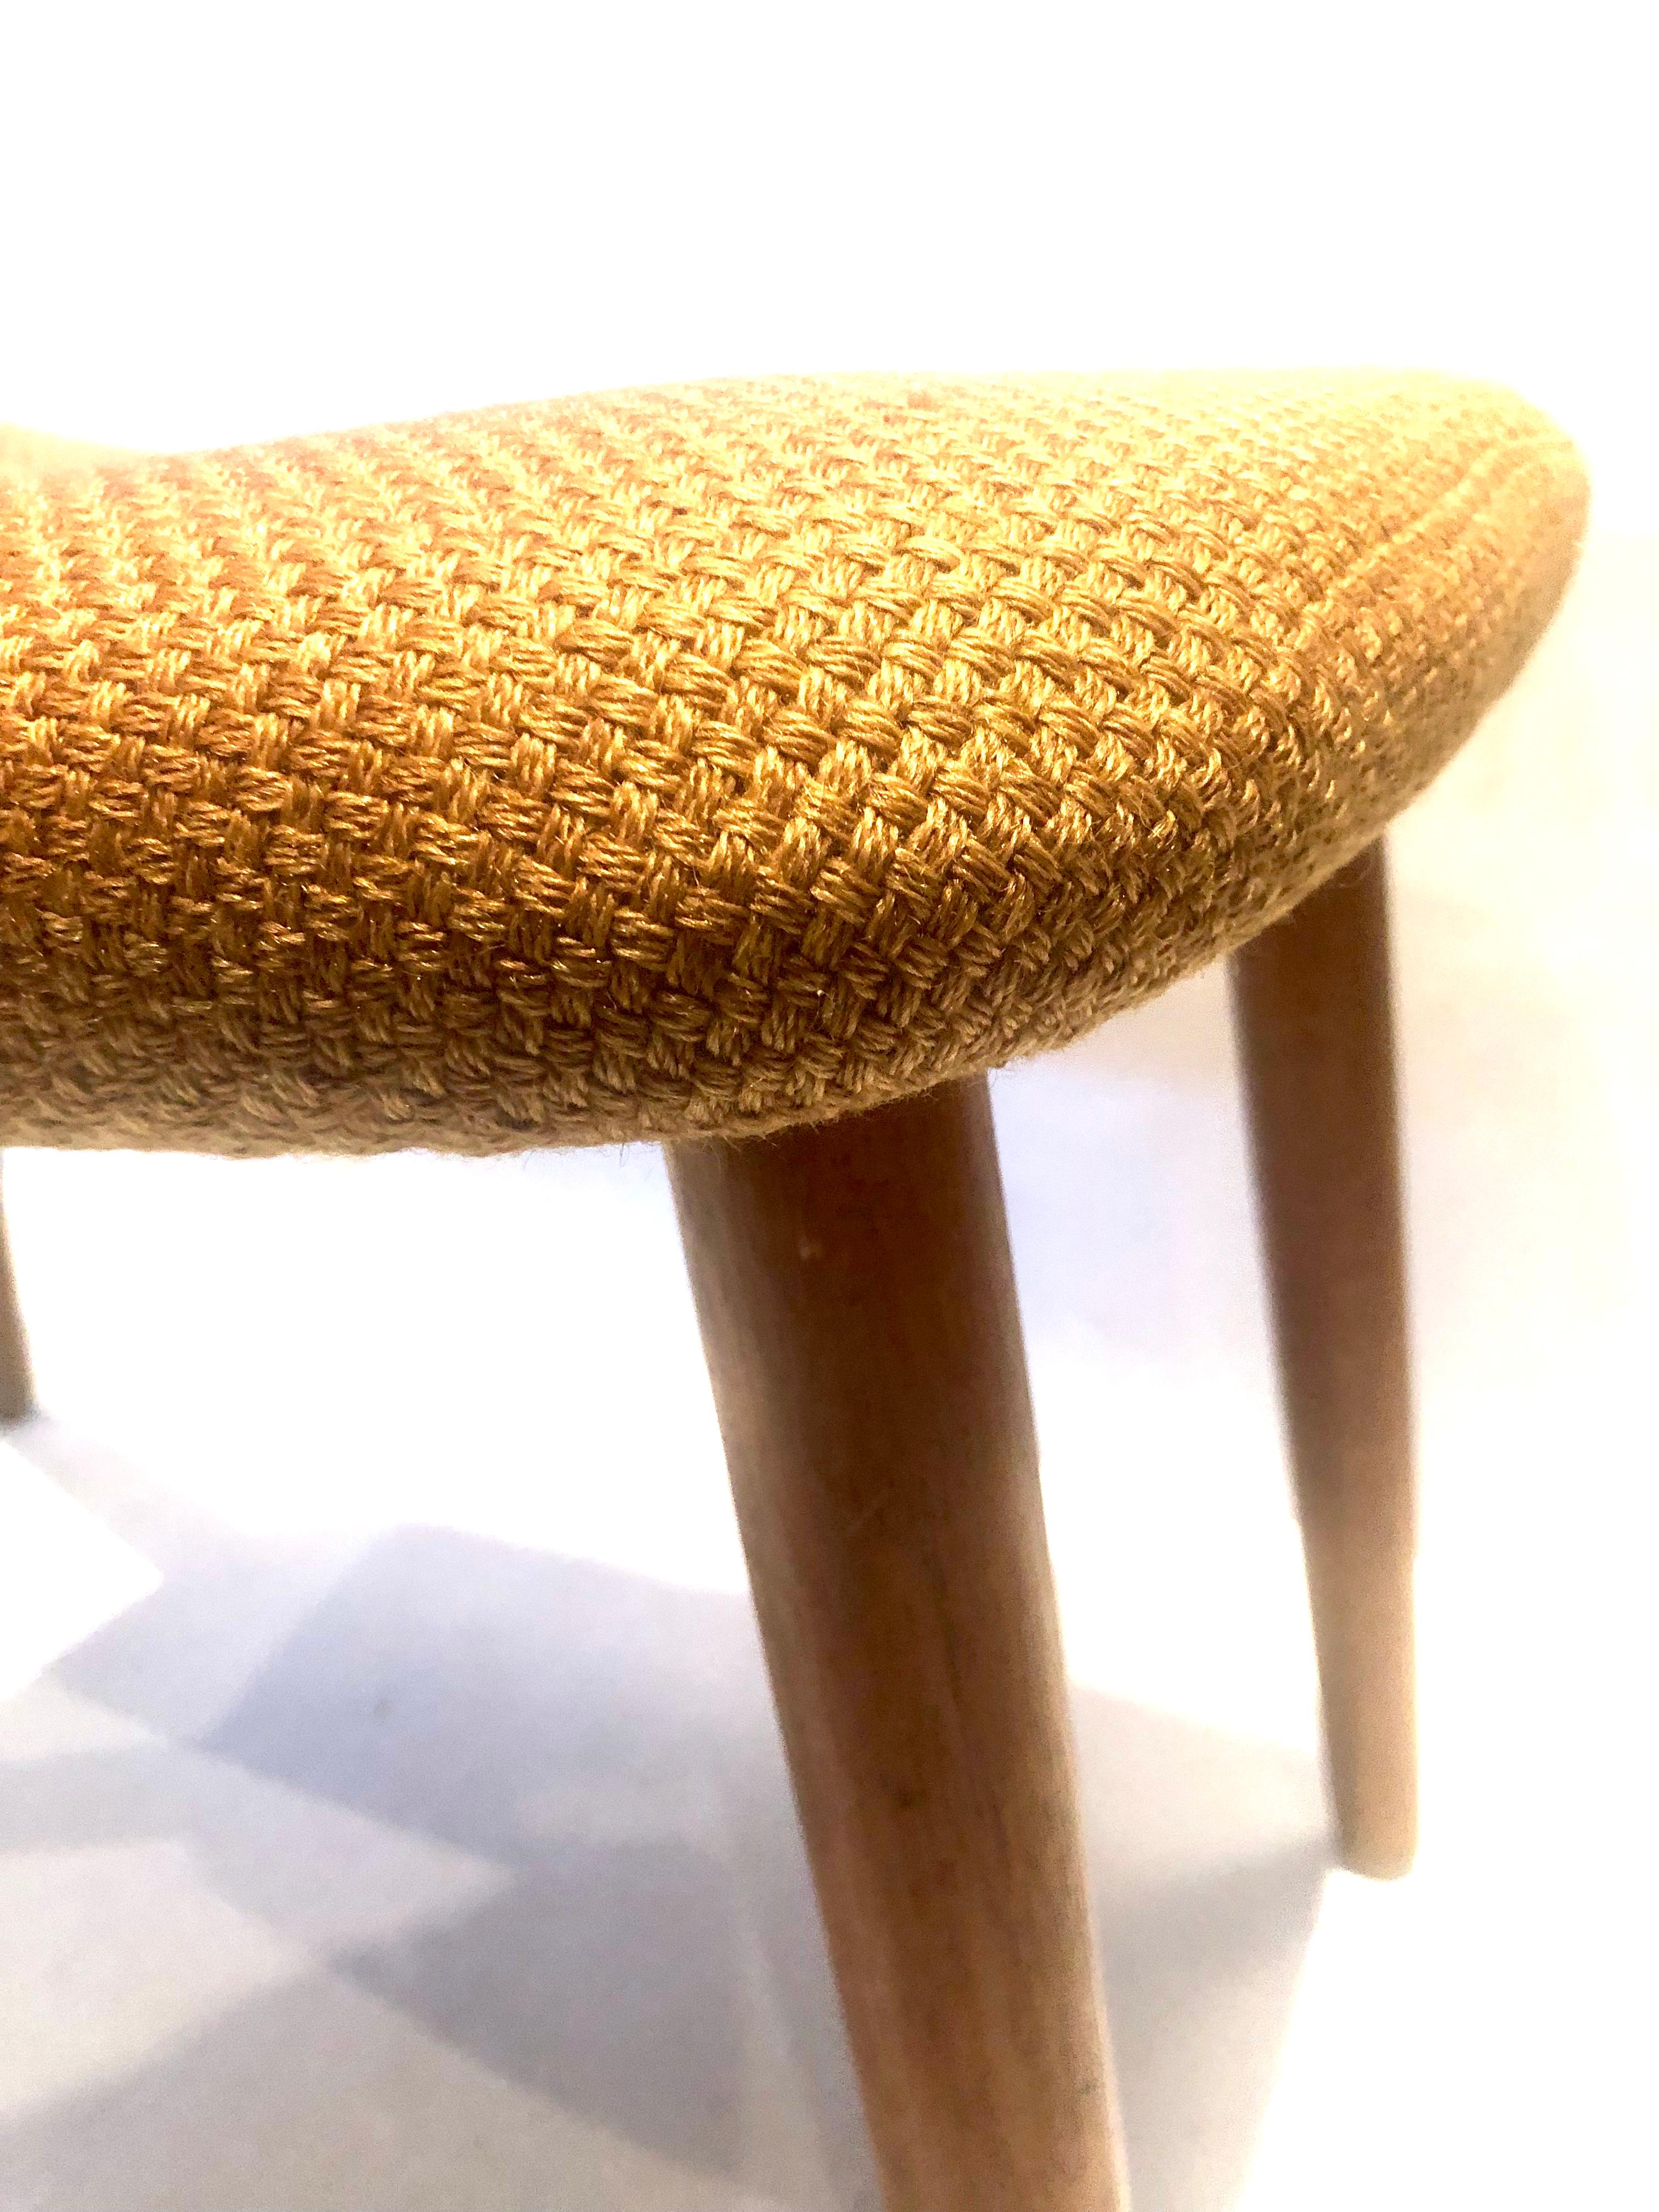 Upholstery Danish Modern Stool